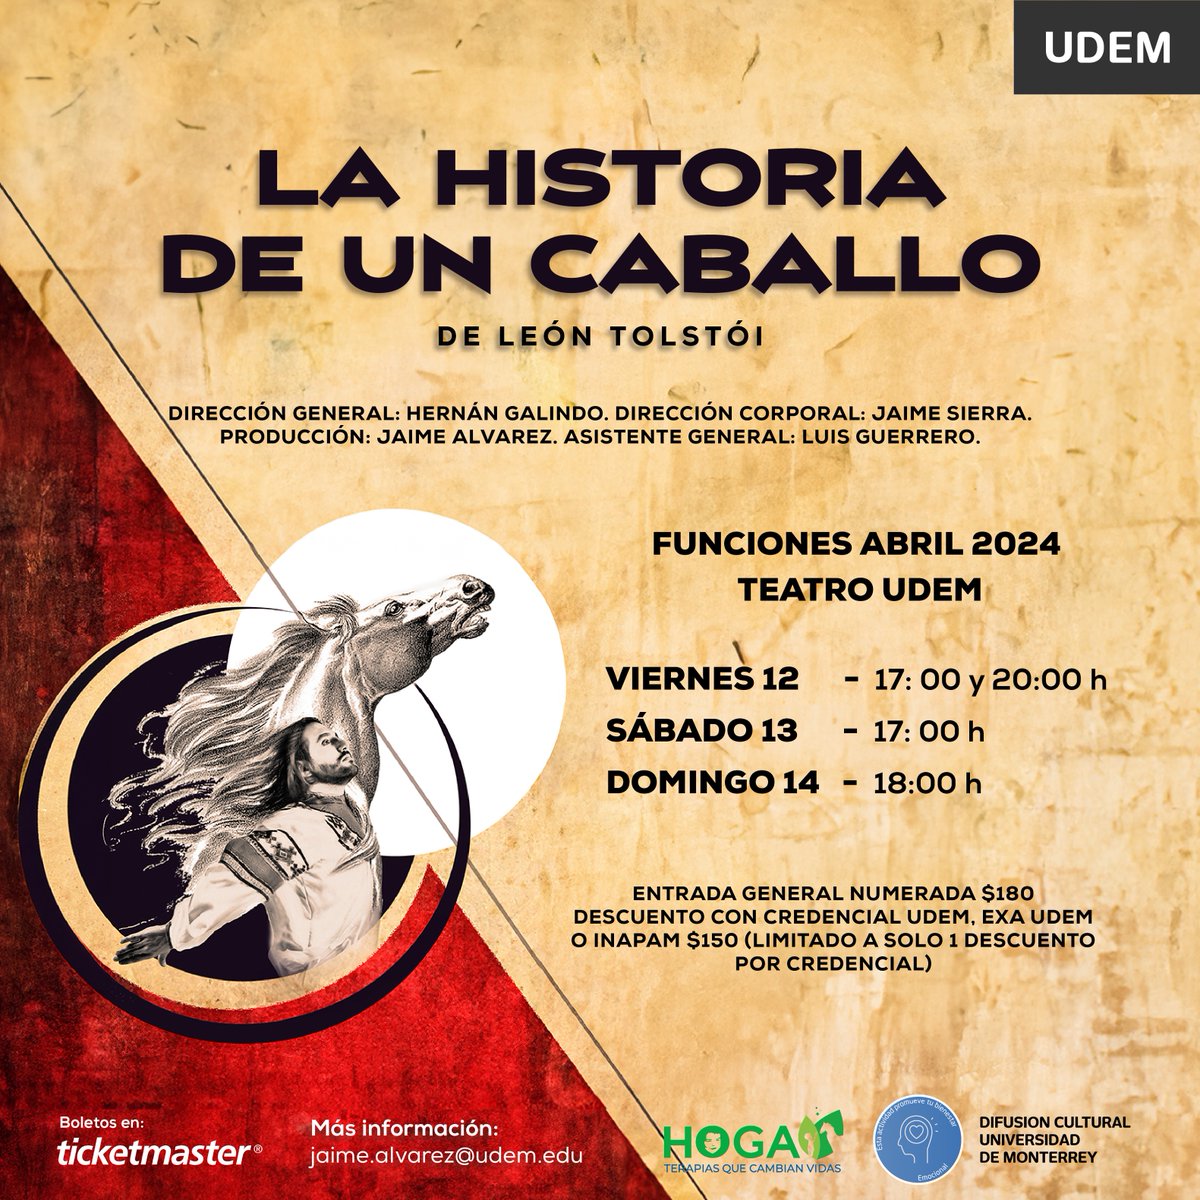 ¡No te pierdas La Historia de un Caballo! 🐎🎭 Una obra dentro de nuestro Teatro UDEM 👏 🗓 12, 13 y 14 de abril ¡Te esperamos! ✨ #InspirandoTuMejorVersión